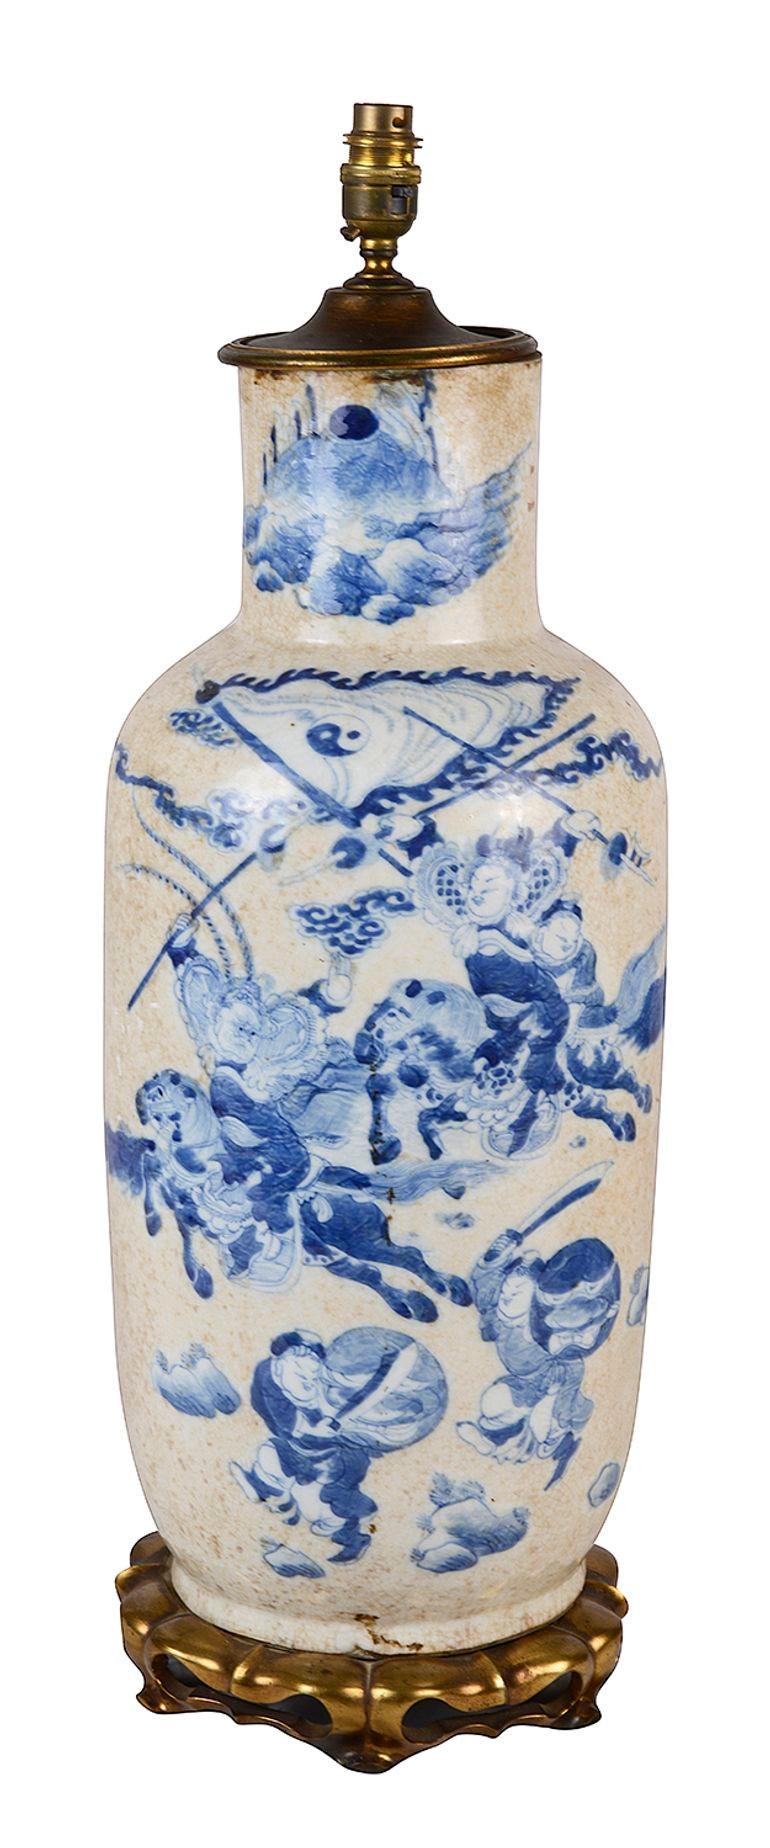 Eine beeindruckende, gute Qualität späten 19. Jahrhundert chinesischen Export blau und weiß Craqueléwaren Vase / Lampe. Mit wunderschönen handgemalten Szenen von Soldaten zu Pferd und im Laufen mit Schilden und Schwertern.
Montiert auf einem